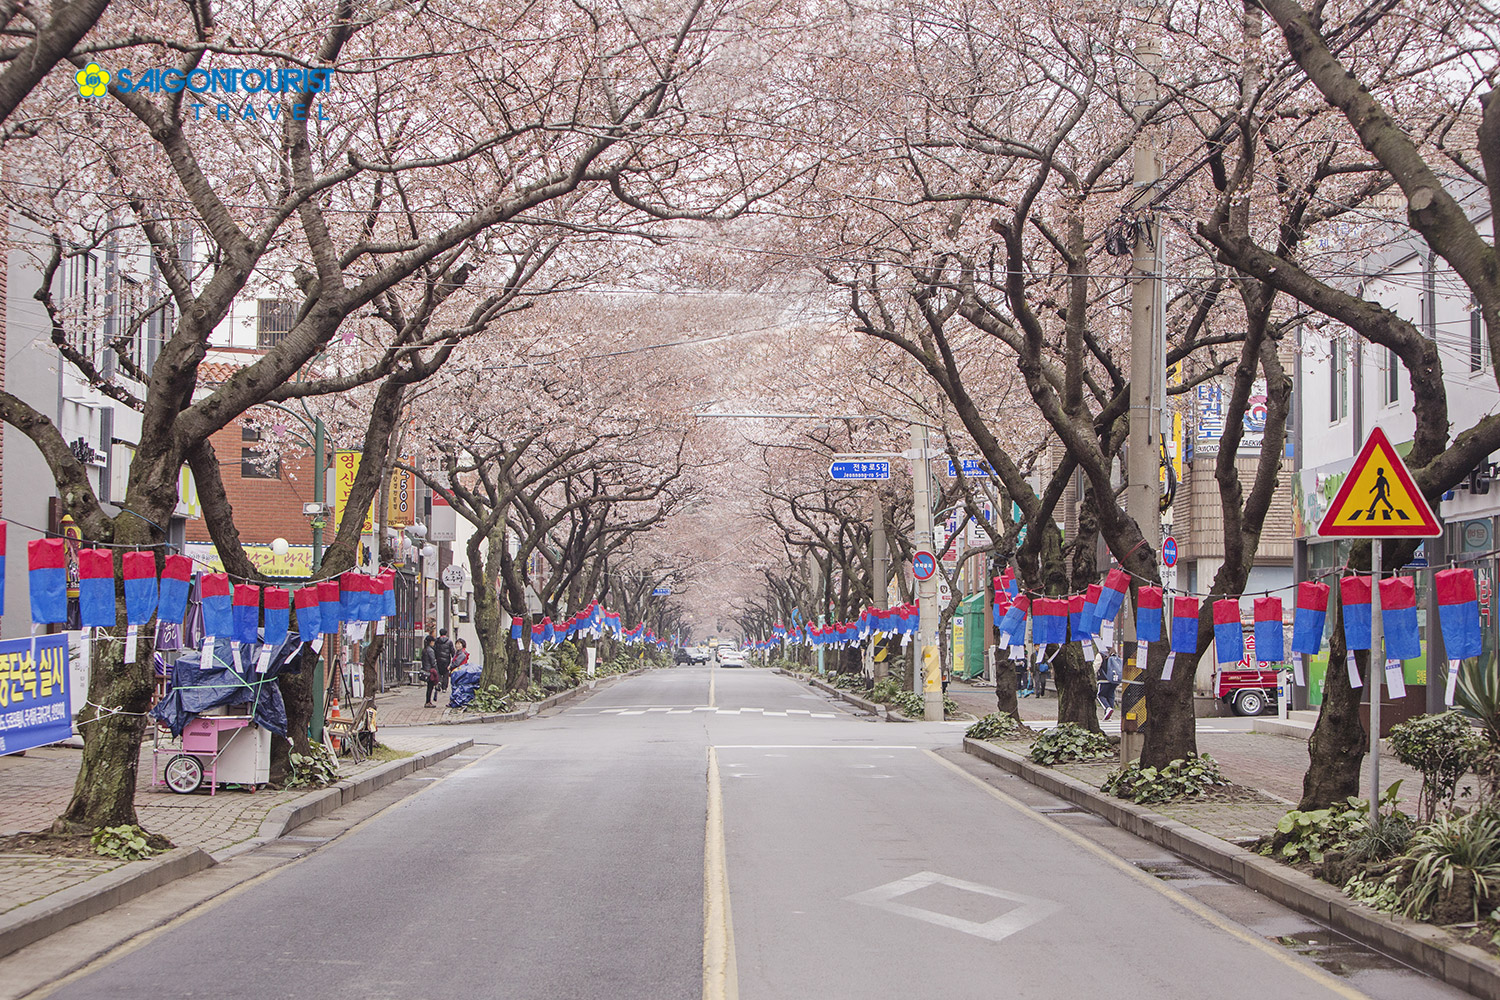 Du lịch Hàn Quốc Mùa Hoa anh đào 2023 [Seoul - Nami - Công viên Yeouido - Làng Pháp - Lotte World]